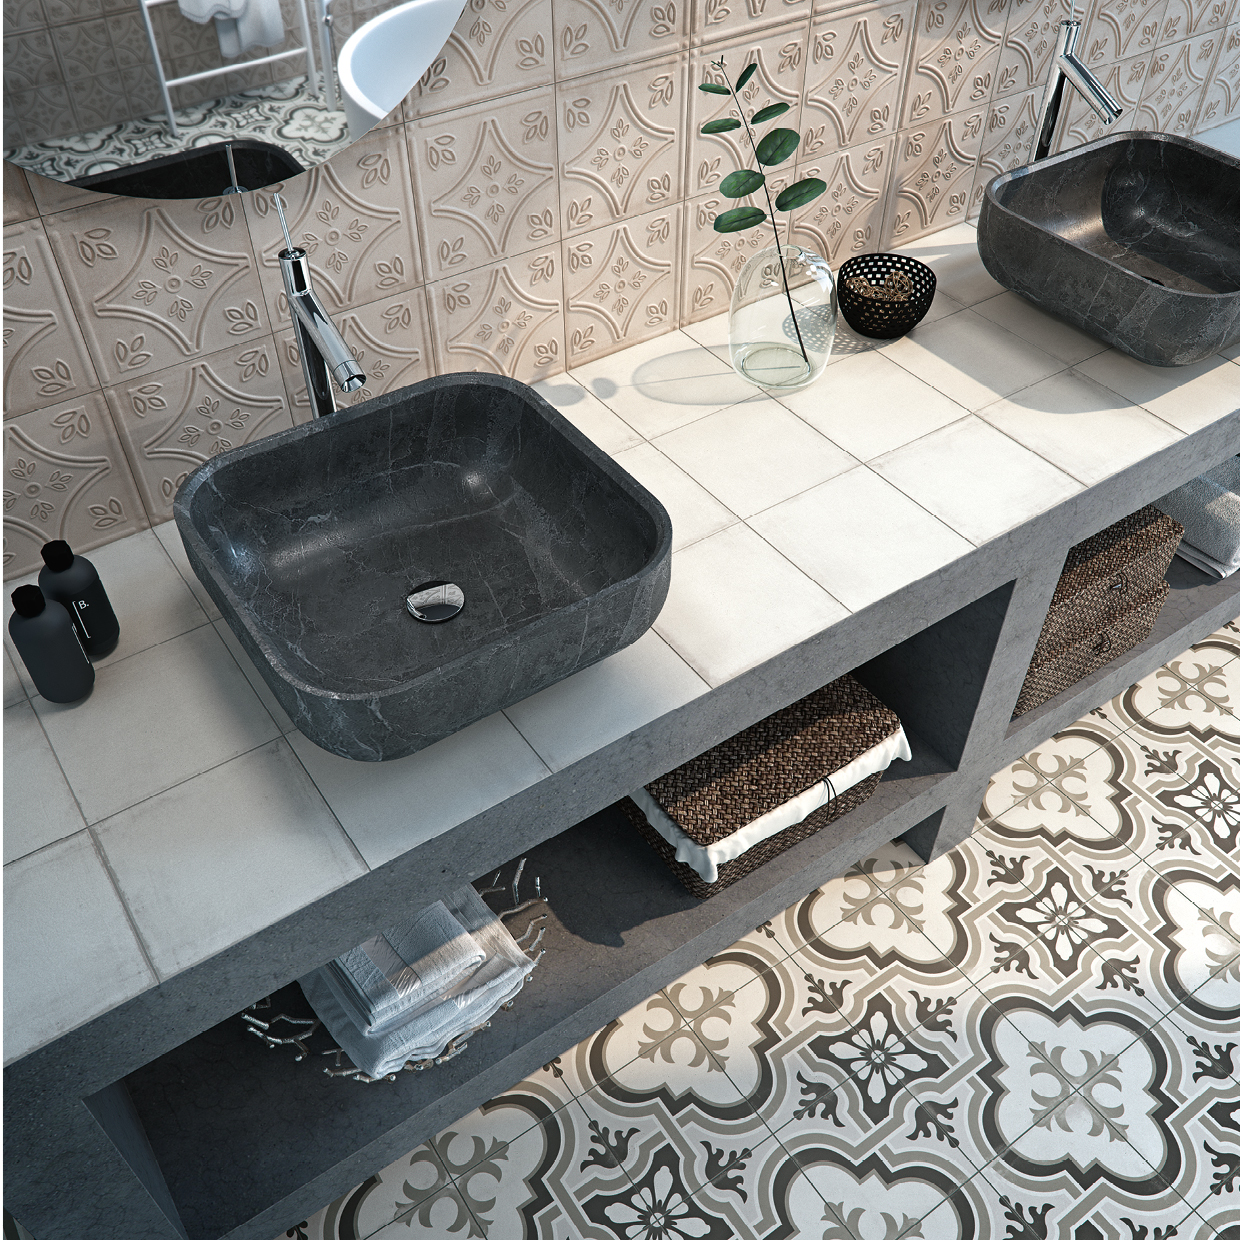 Łazienka z rustykalnymi plytkami patchwork łatwymi w utrzymaniu czystości.